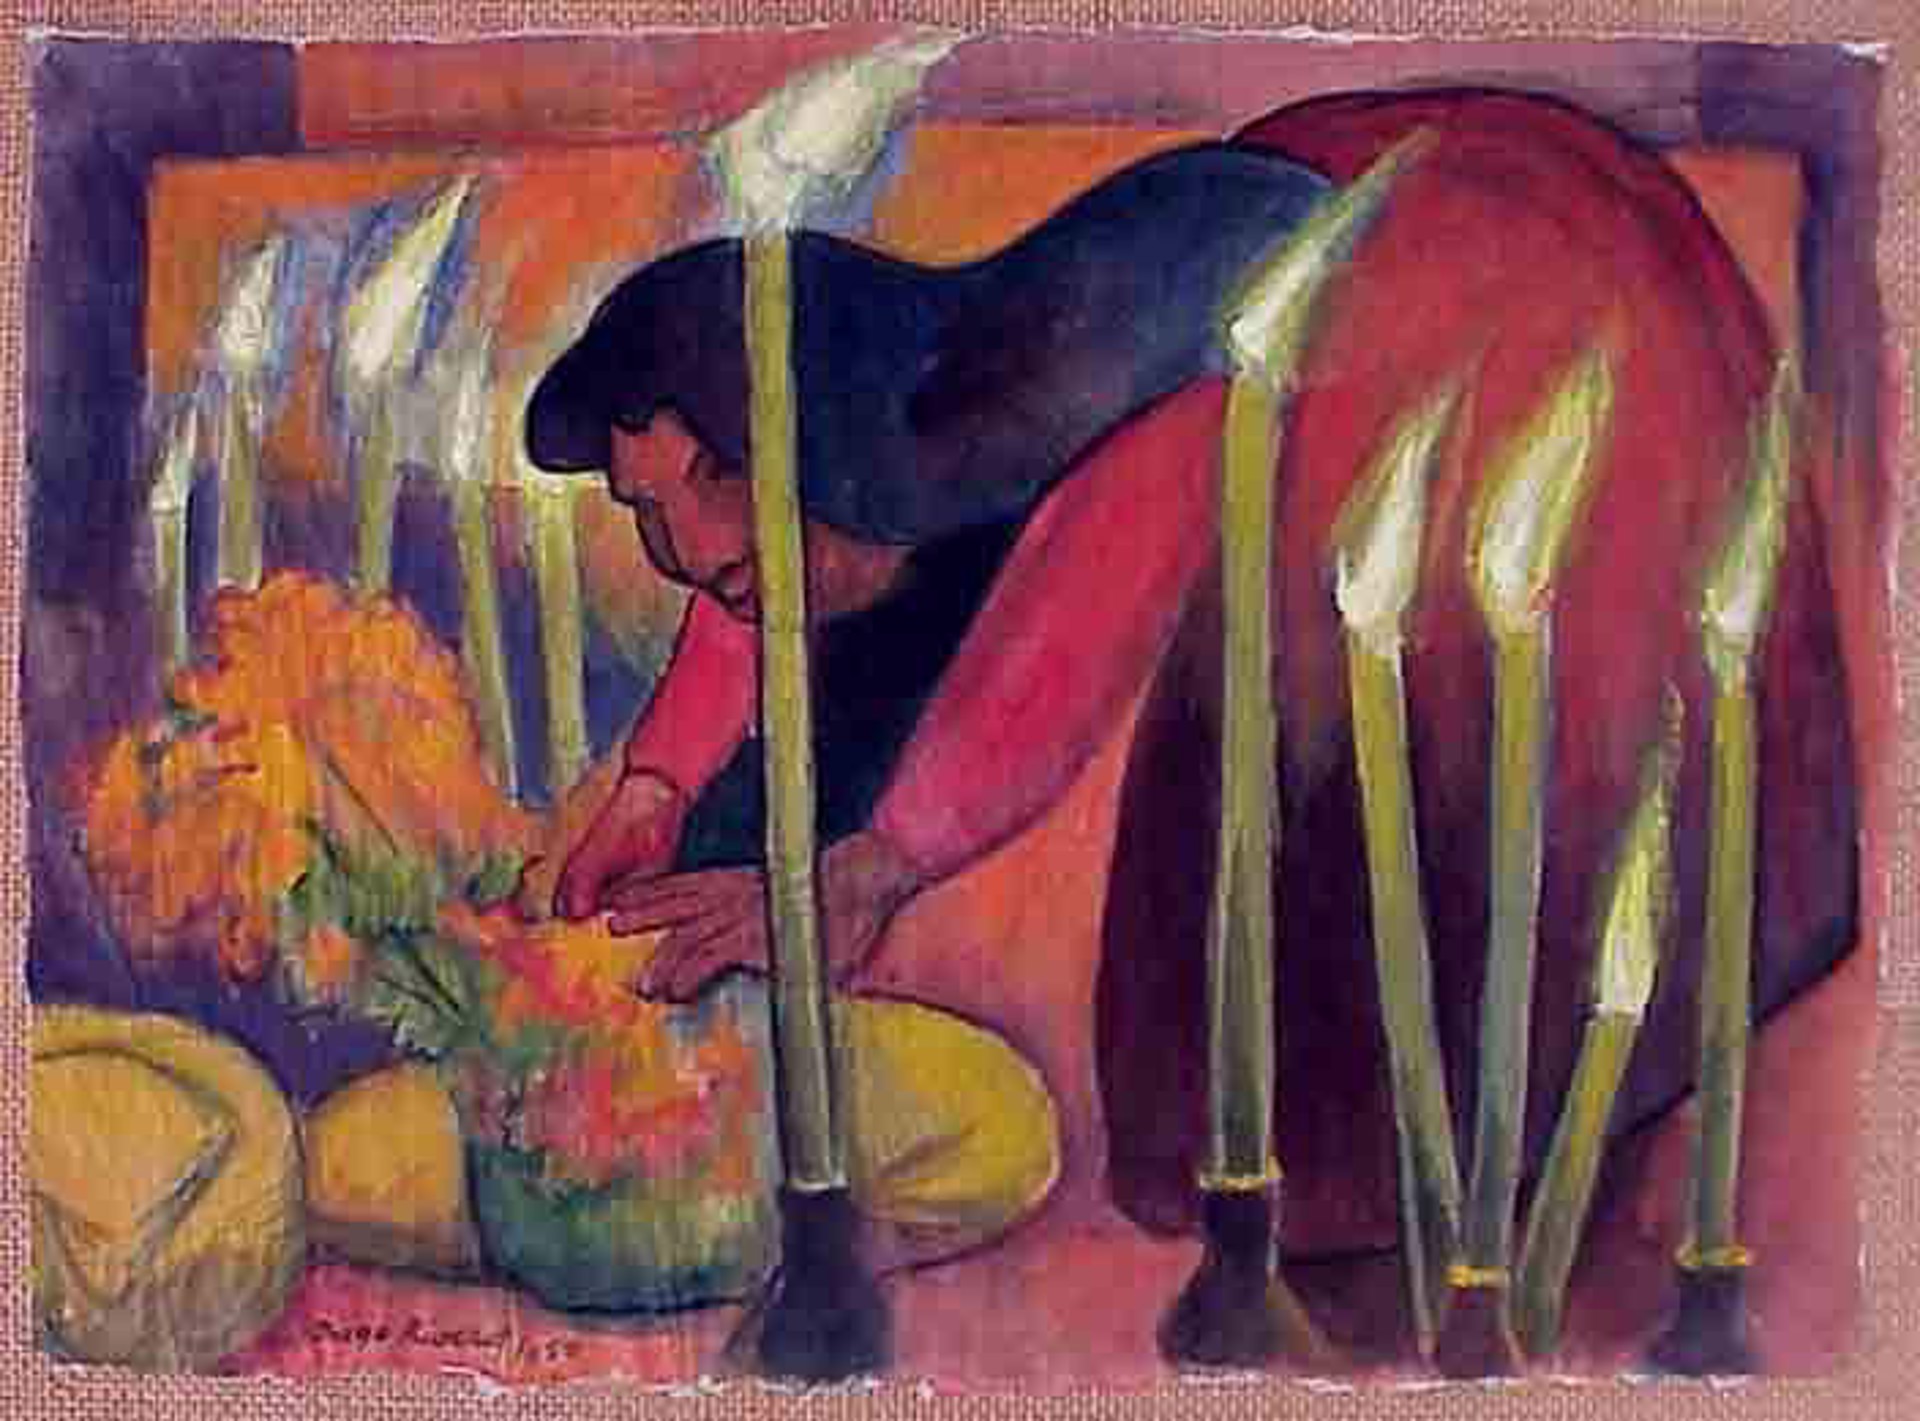 La Offrenda by Diego Rivera